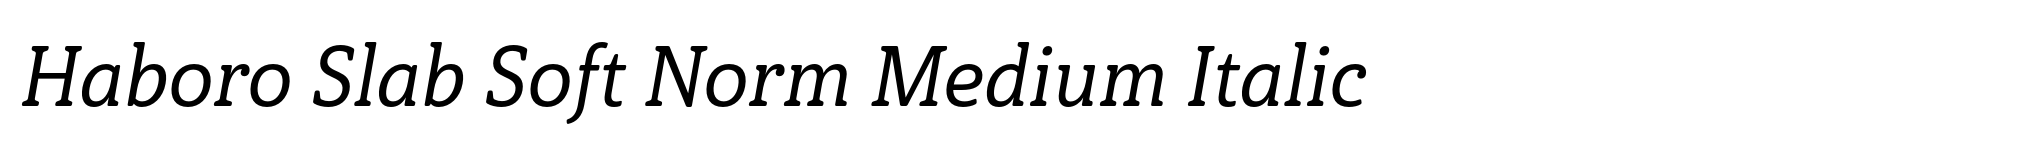 Haboro Slab Soft Norm Medium Italic image